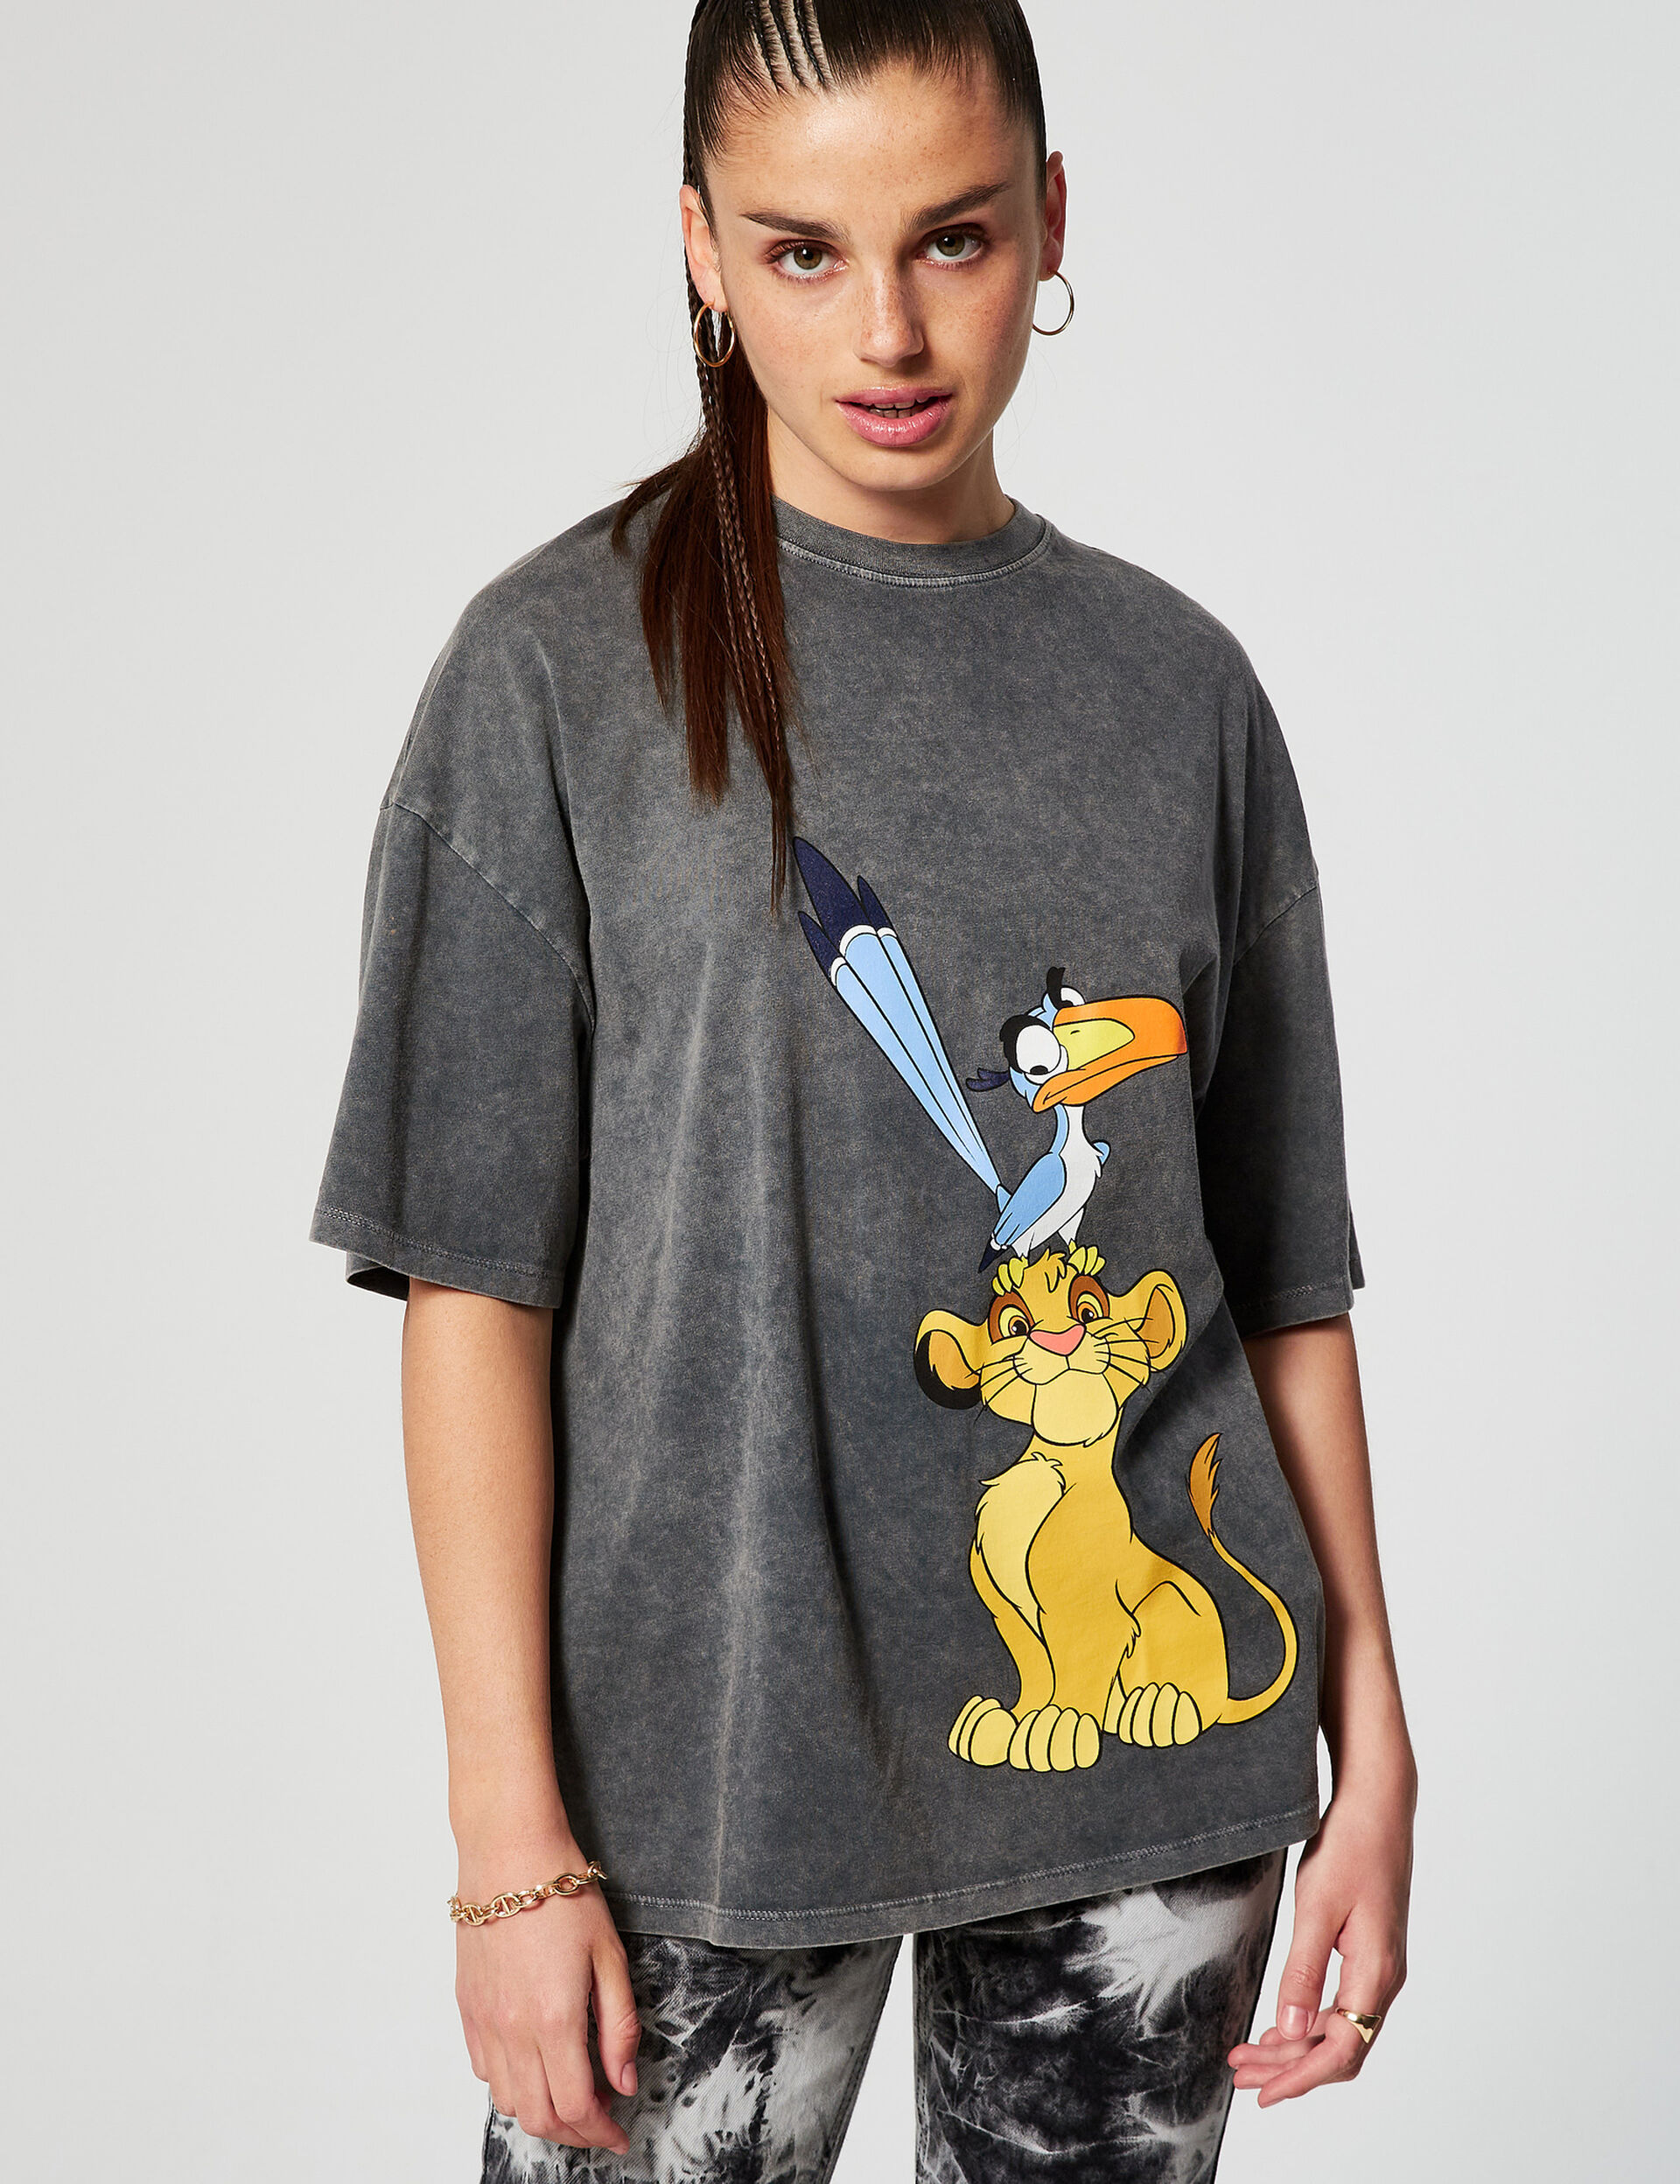 Tee-shirt Disney Roi Lion